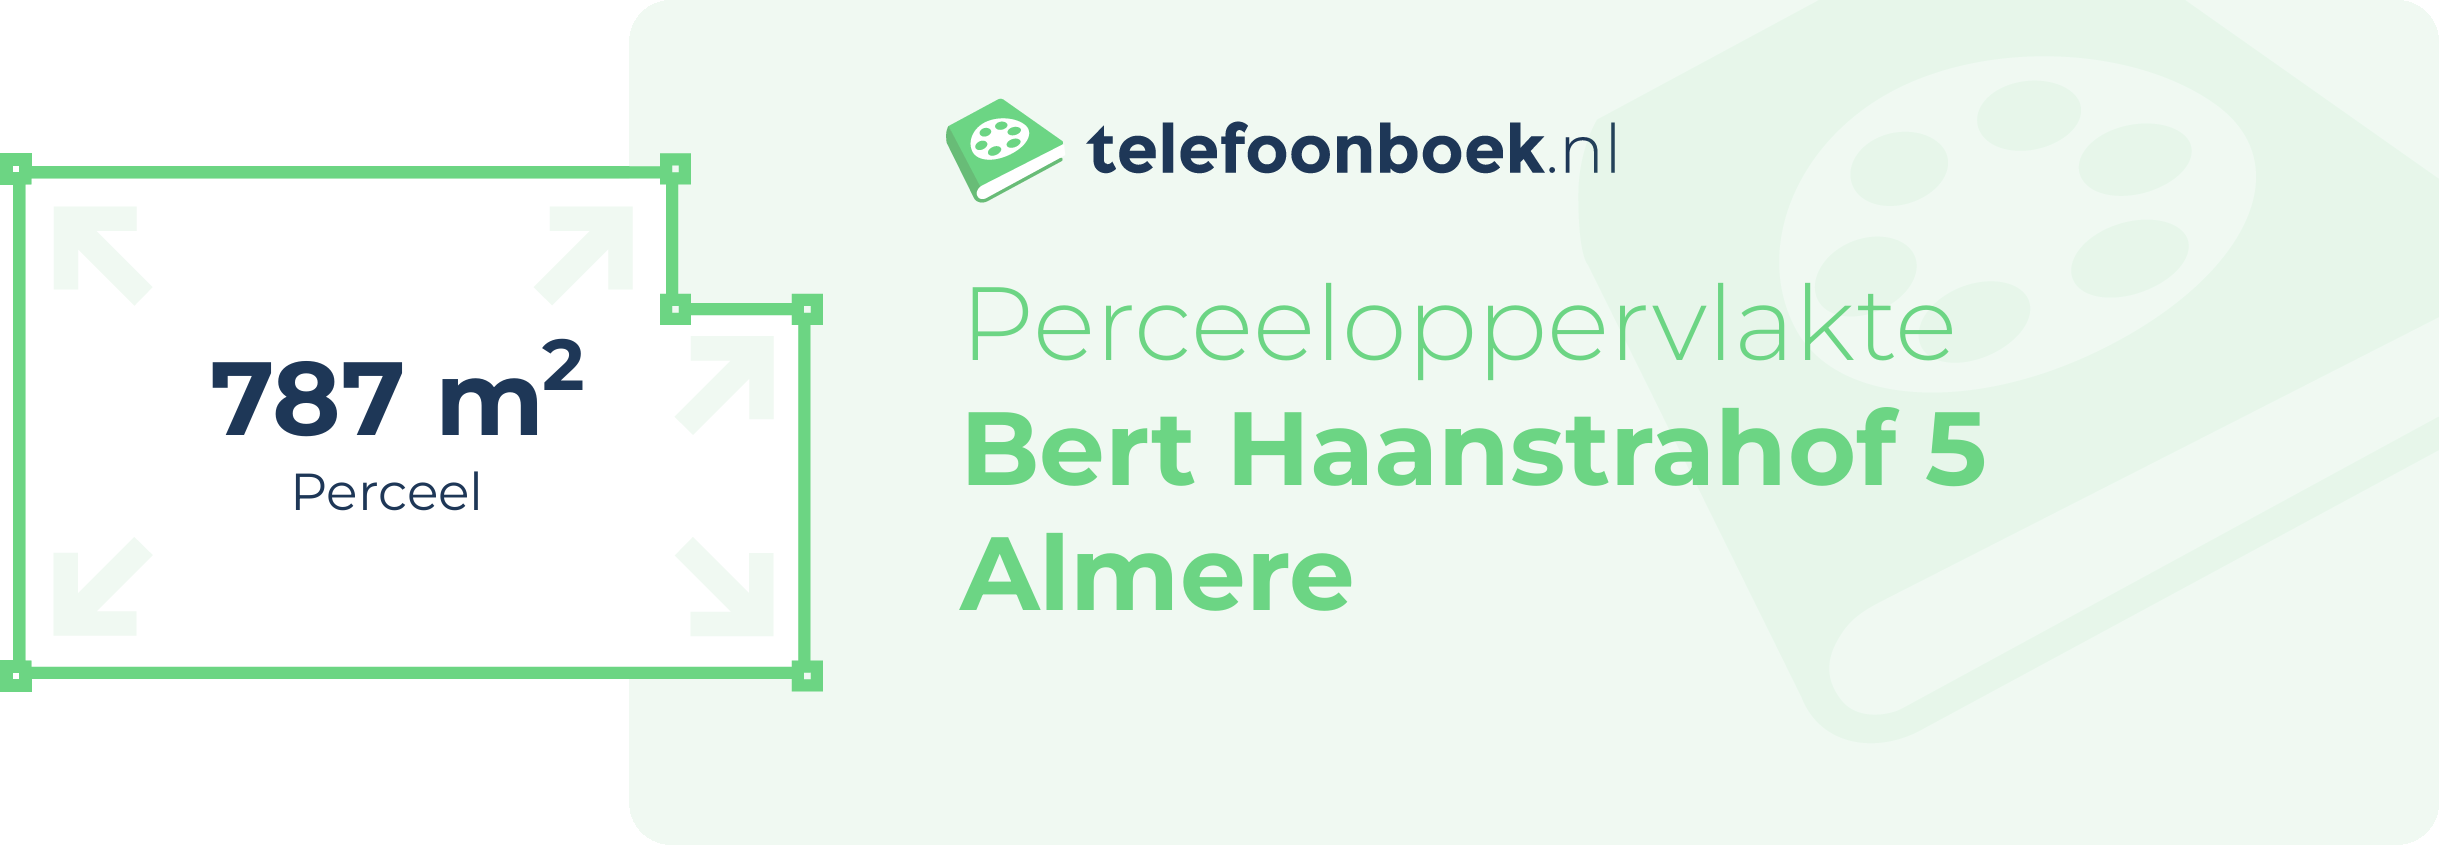 Perceeloppervlakte Bert Haanstrahof 5 Almere